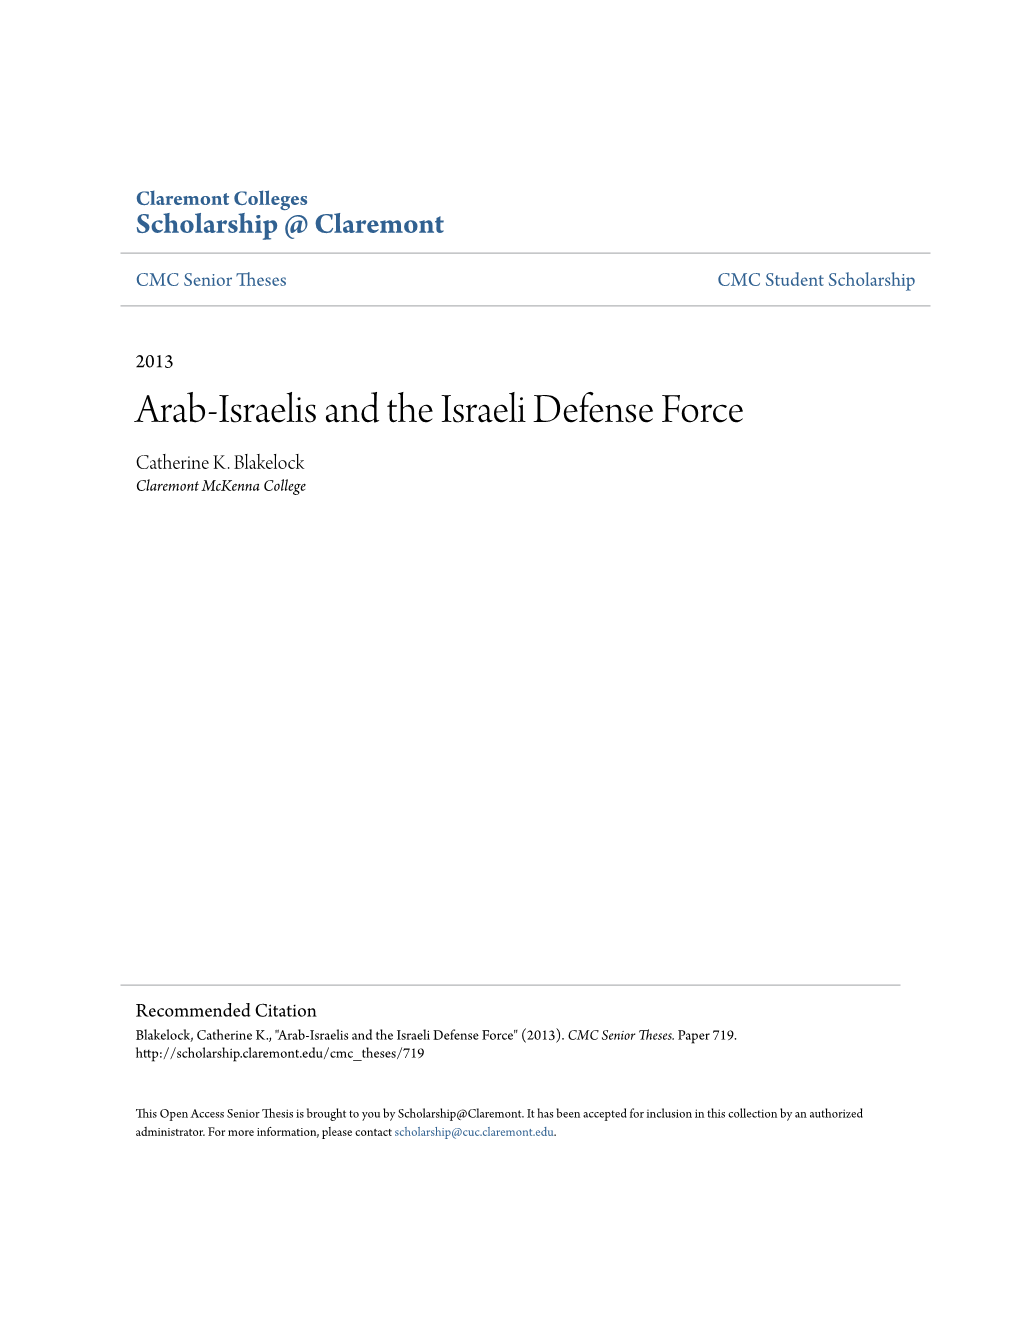 Arab-Israelis and the Israeli Defense Force Catherine K